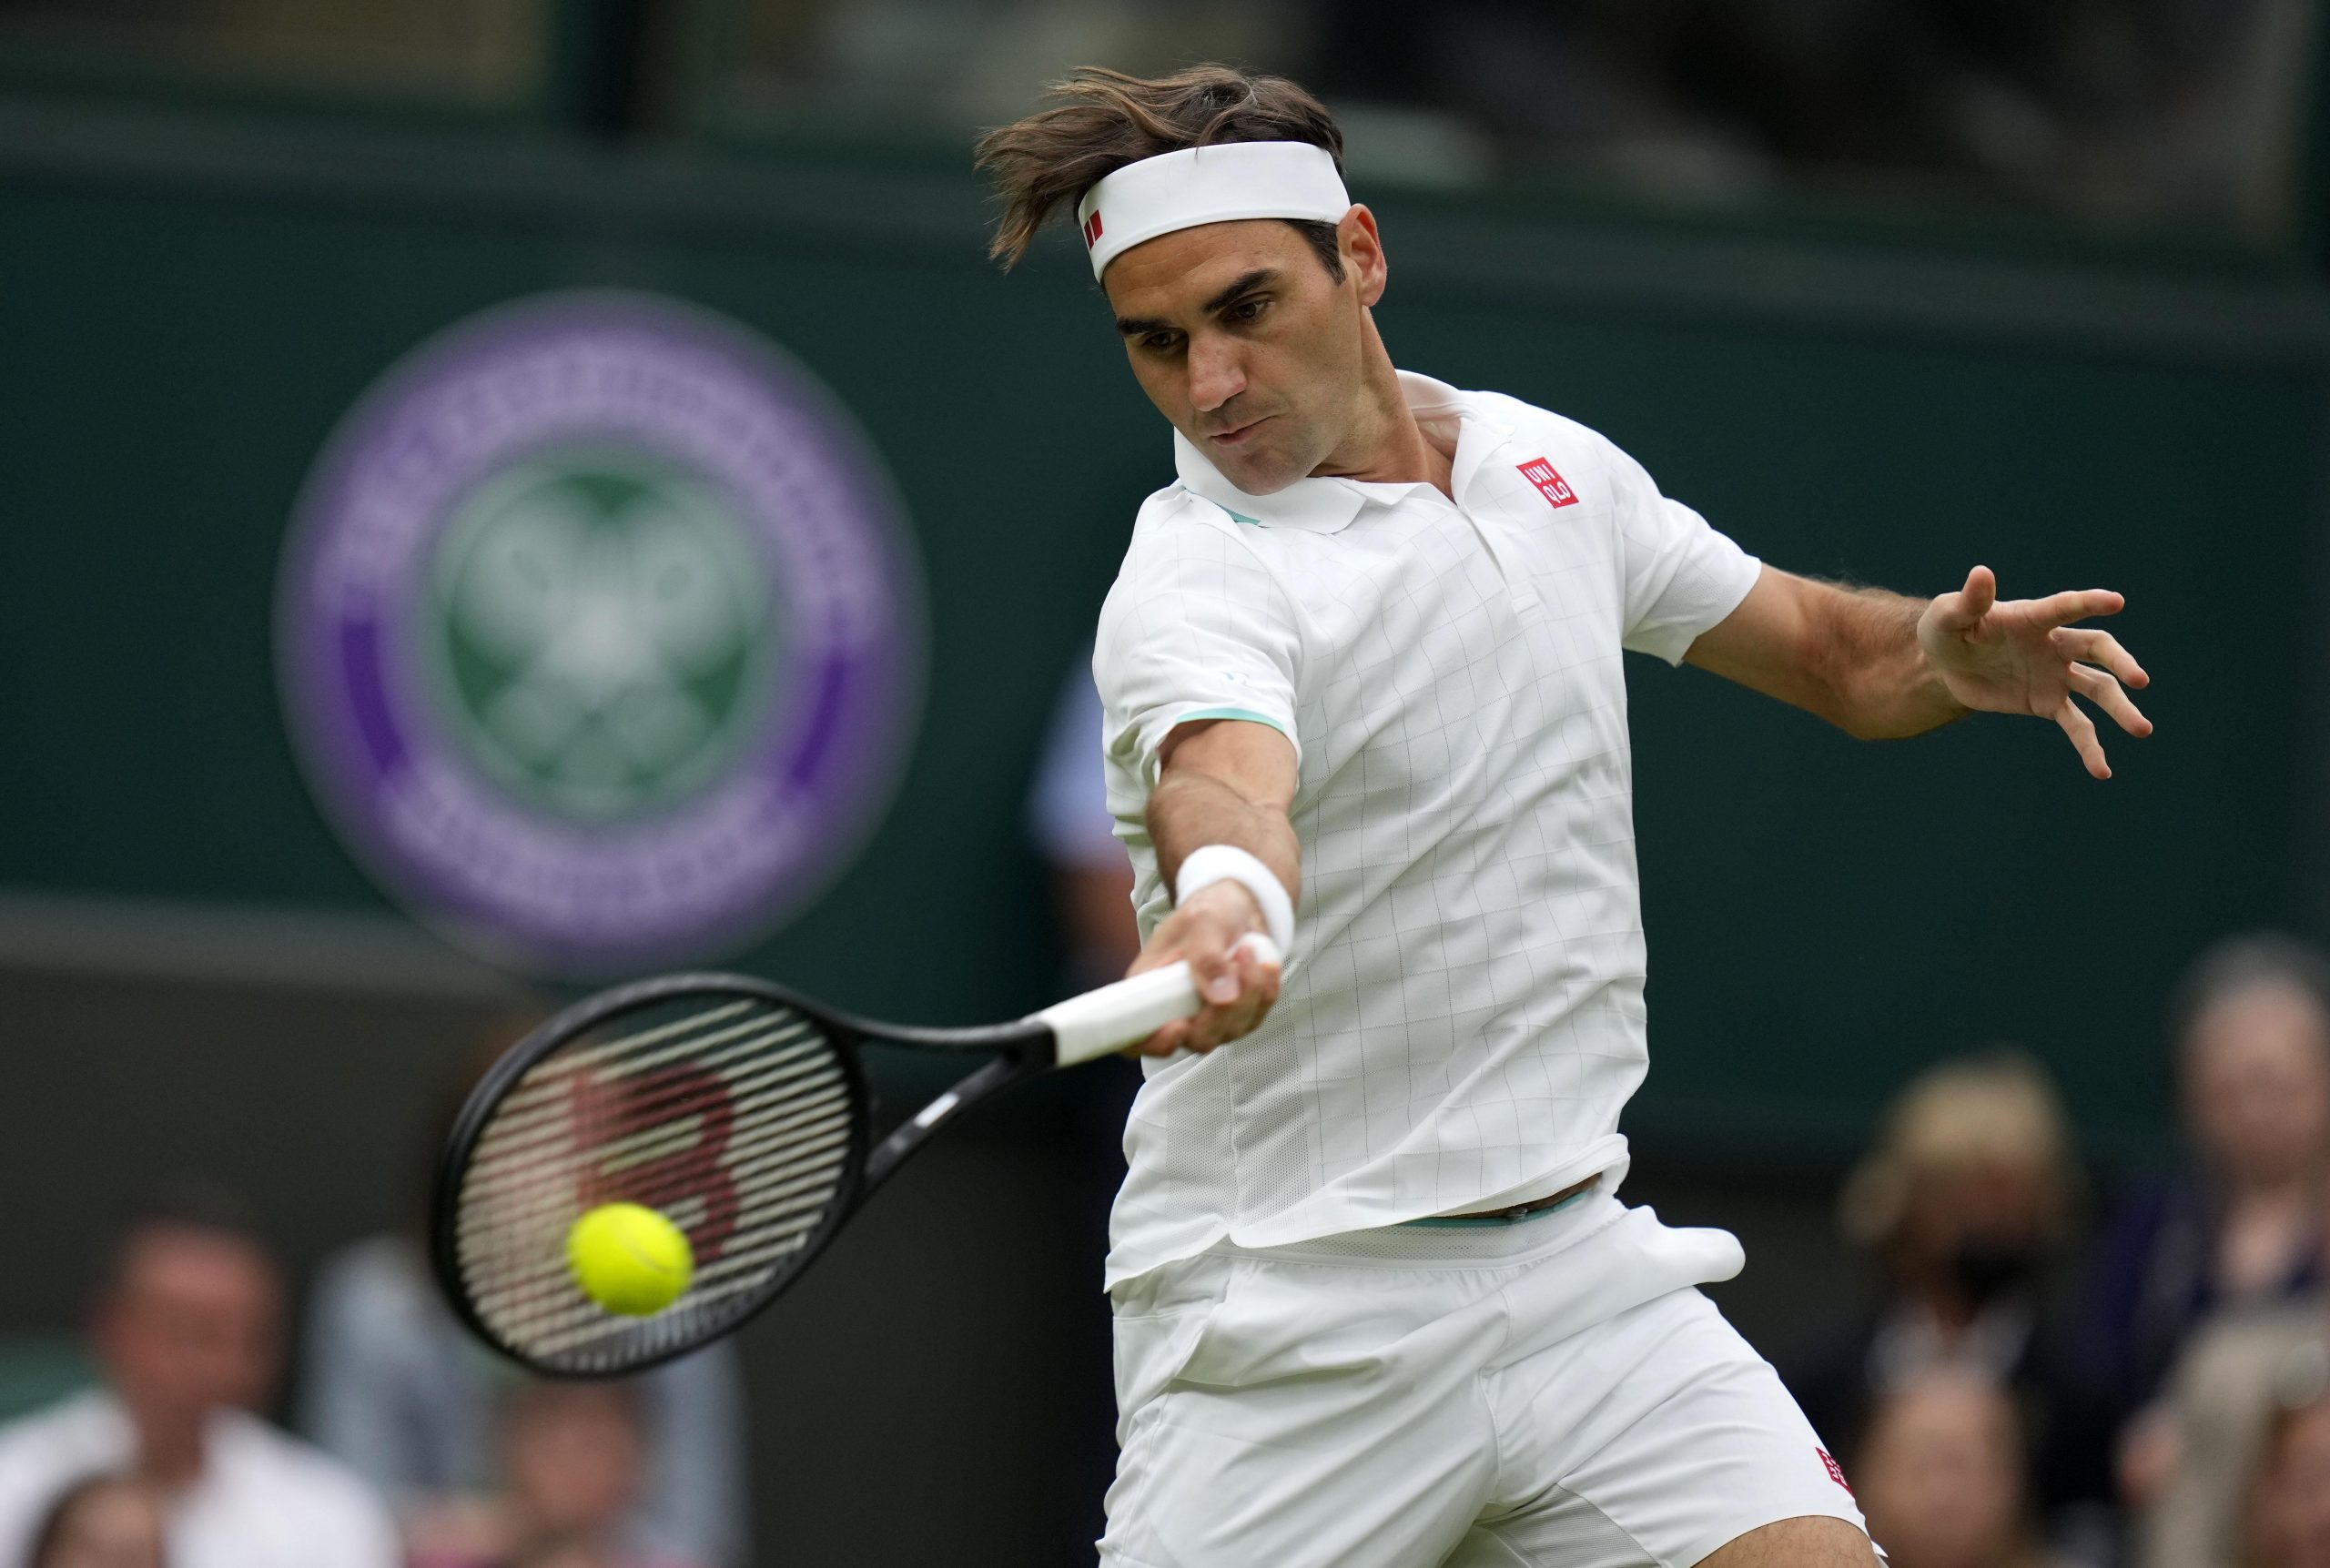 Wimbledon: Roger Federer survives centre court scare, advances to round 2